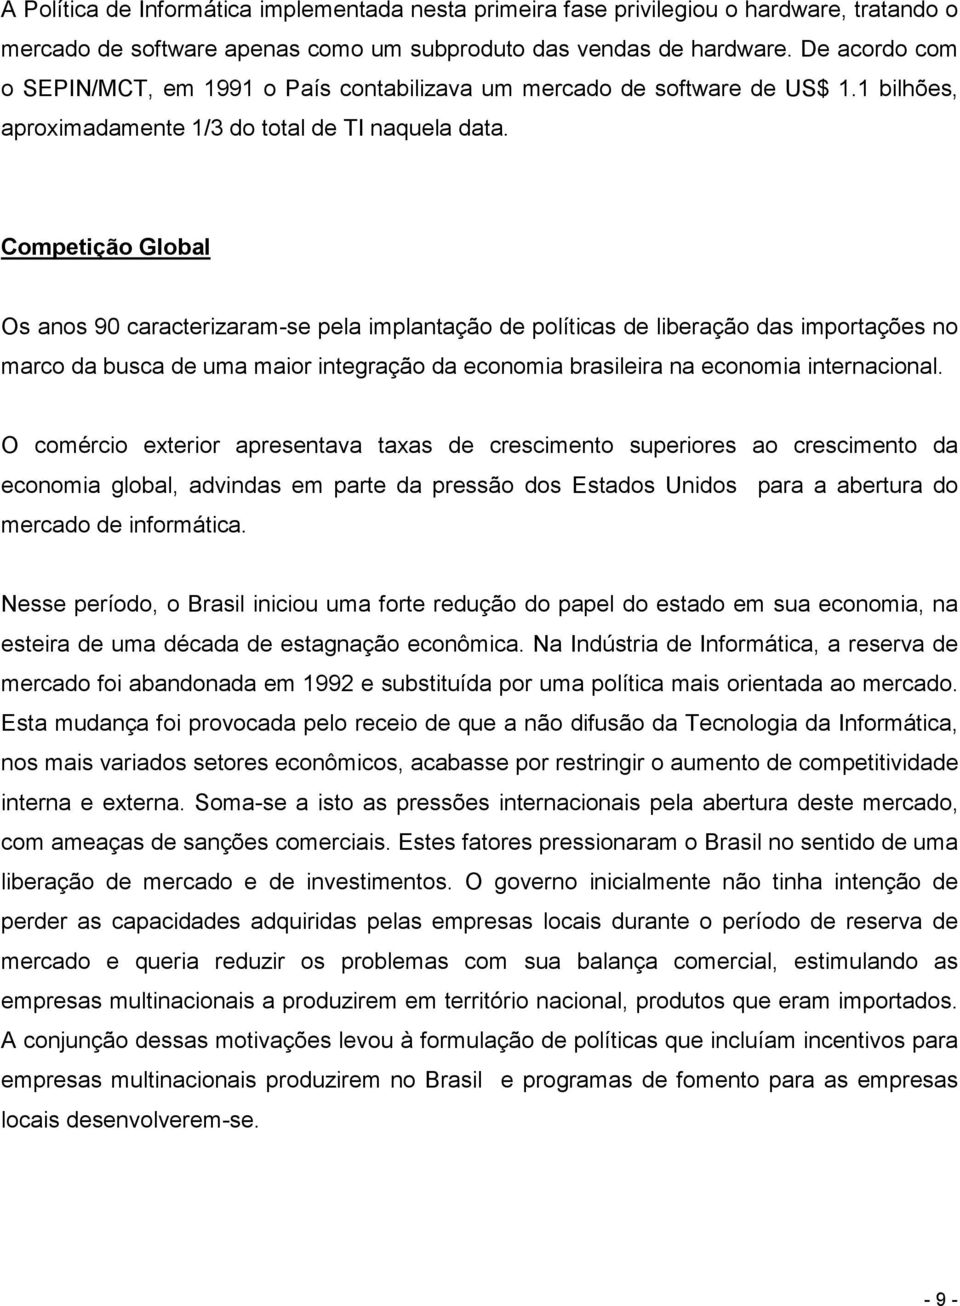 Competição Global Os anos 90 caracterizaram-se pela implantação de políticas de liberação das importações no marco da busca de uma maior integração da economia brasileira na economia internacional.